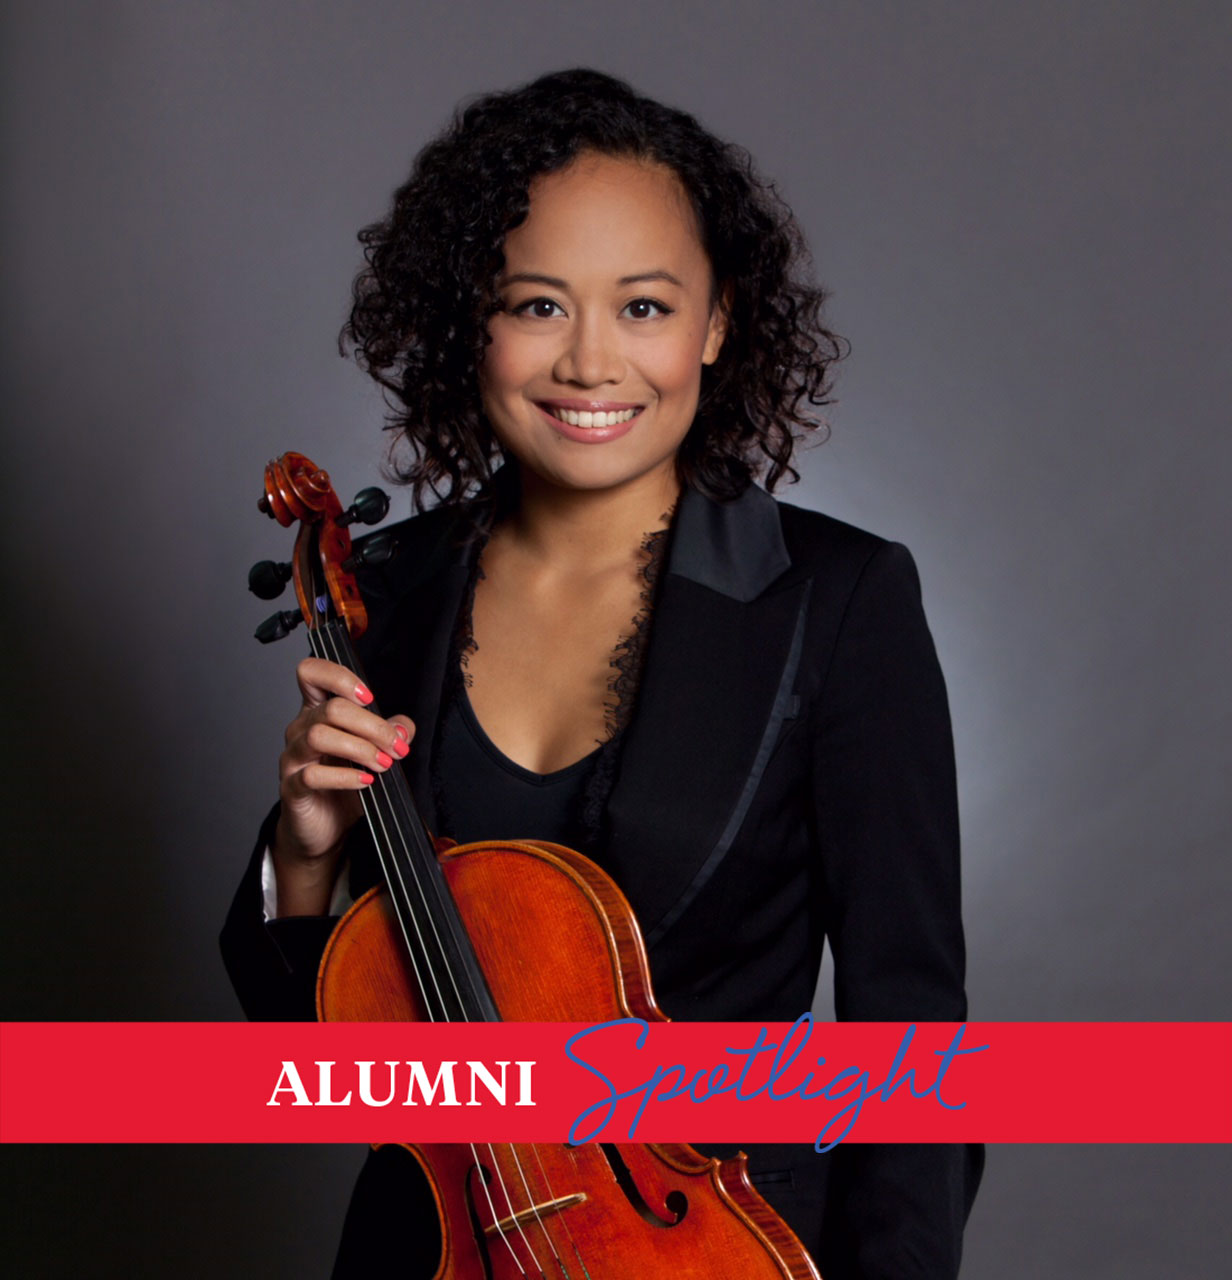 Alum Imelda Tecson (M.M. '09) is a professional violist and violinist.